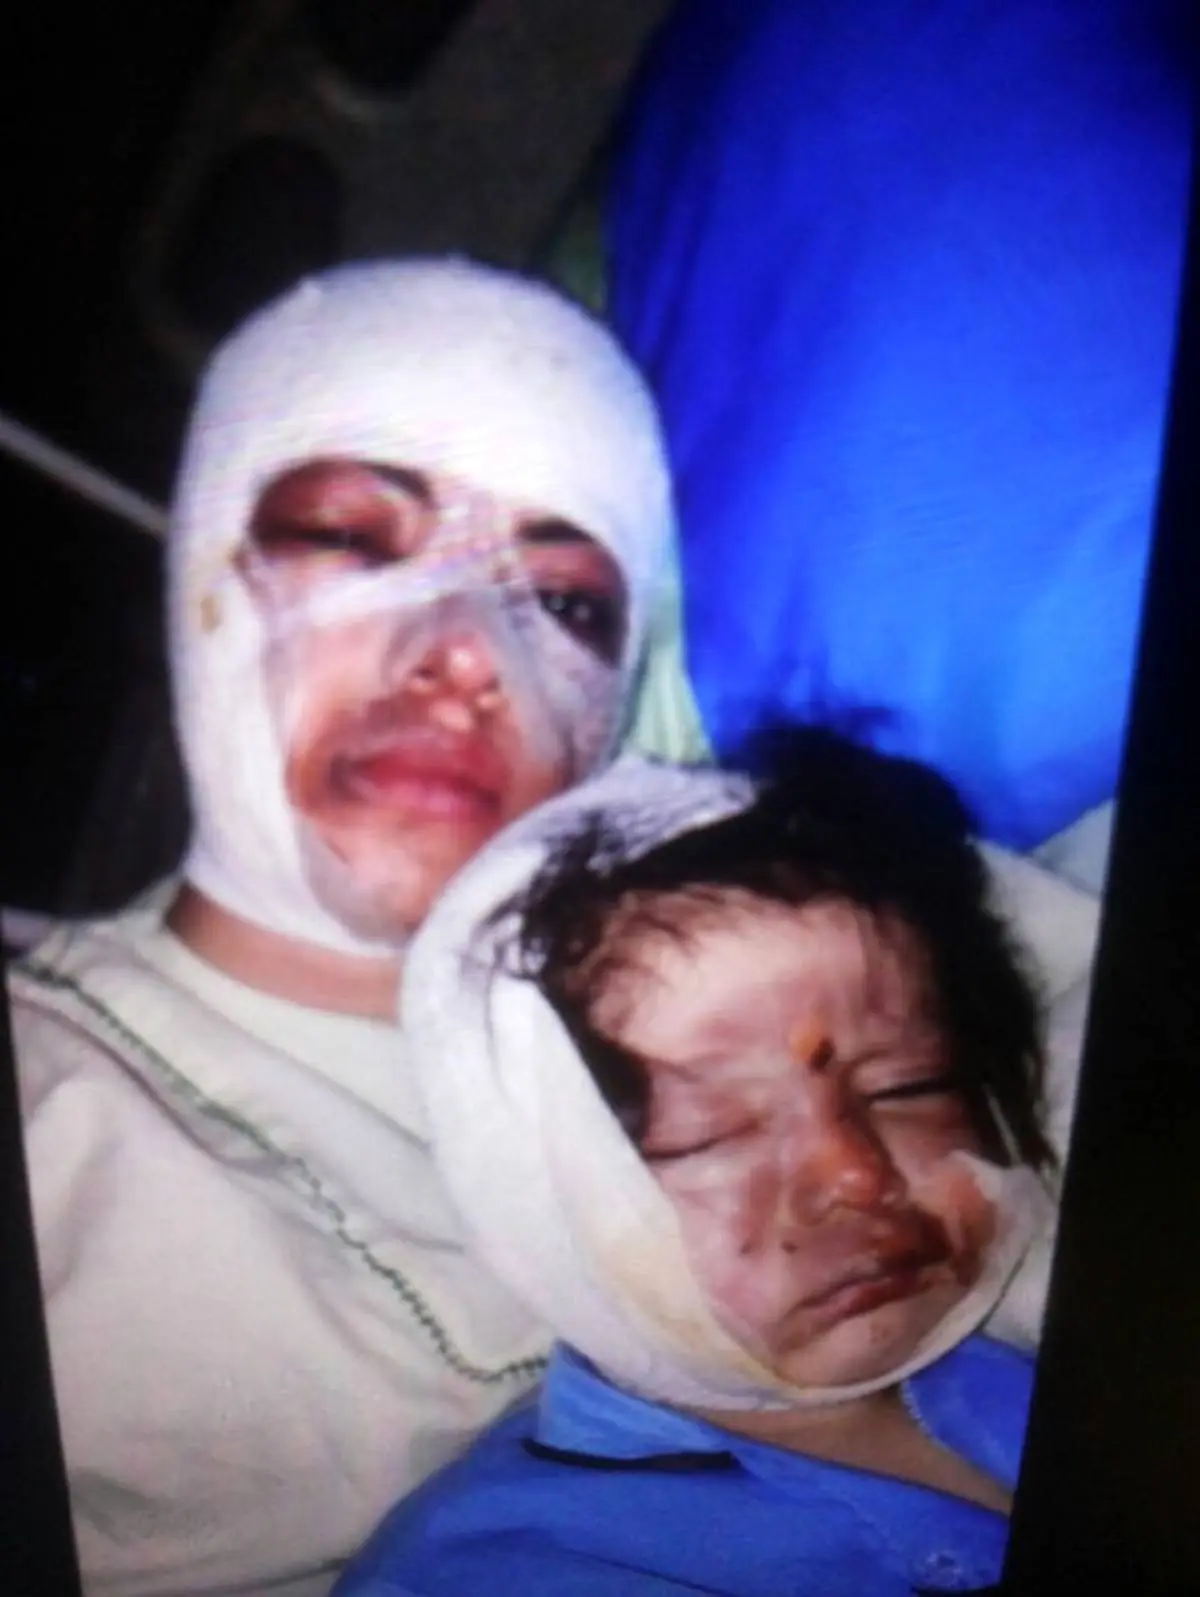 جزئیات اسیدپاشی روی صورت عمه و کودک ۲ ساله + عکس